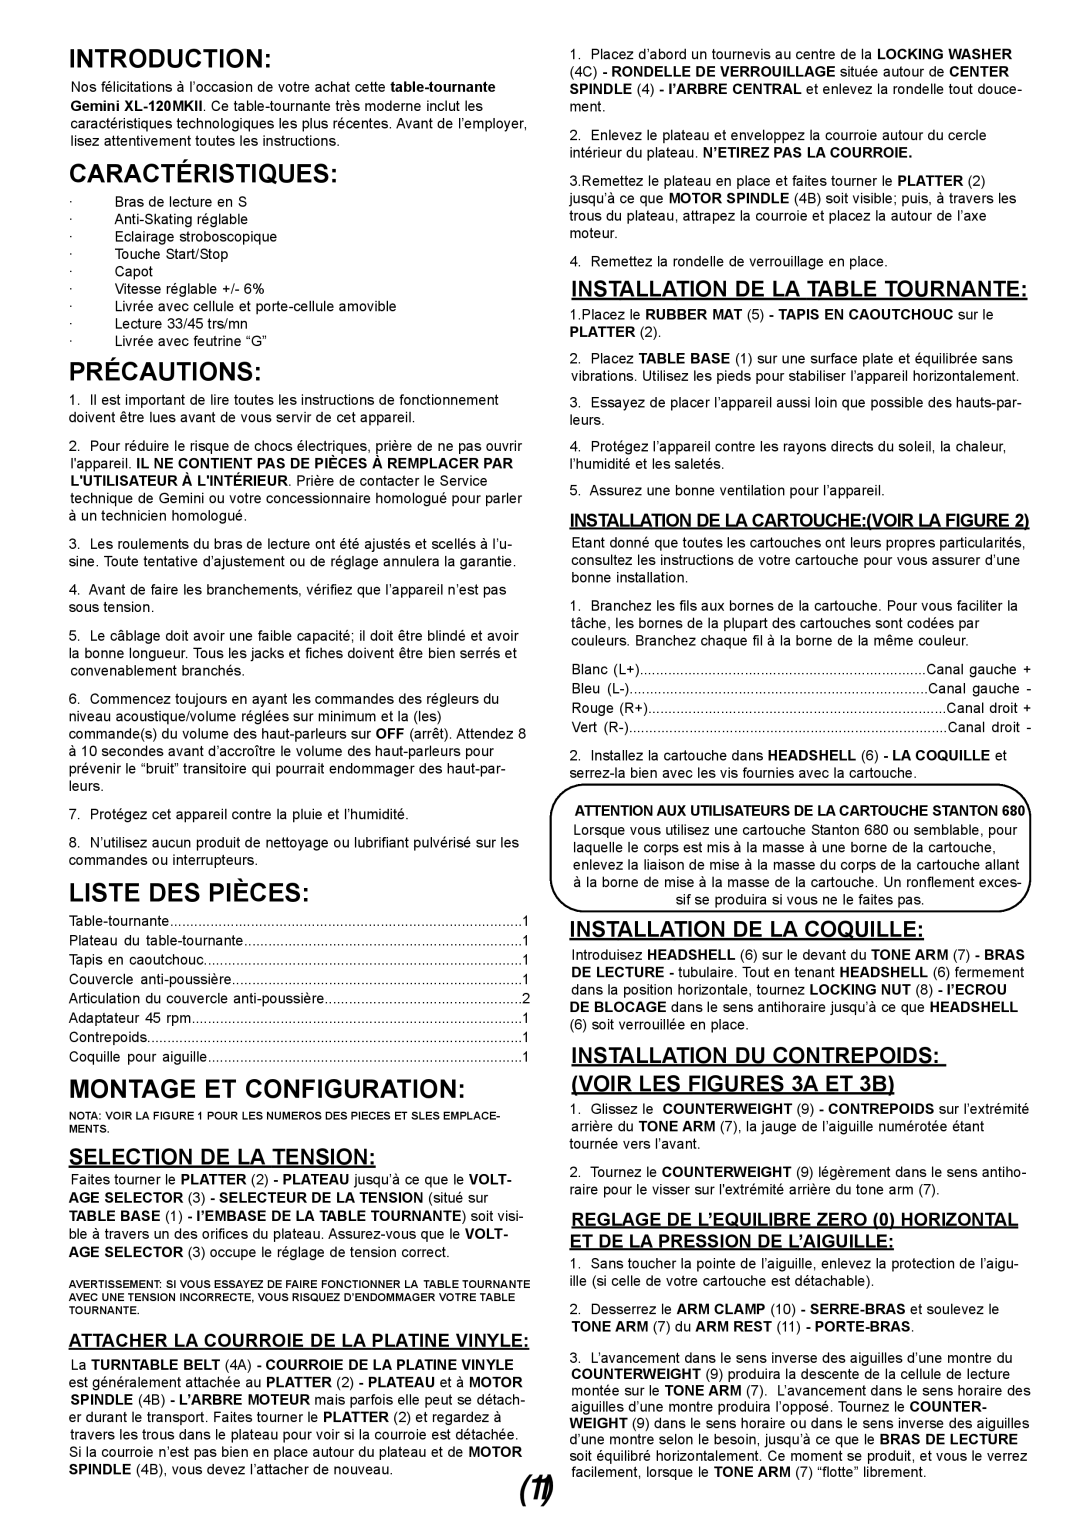 Gemini XL-120MKII manual Caractéristiques, Précautions, Liste Des Pièces, Montage Et Configuration, Selection De La Tension 